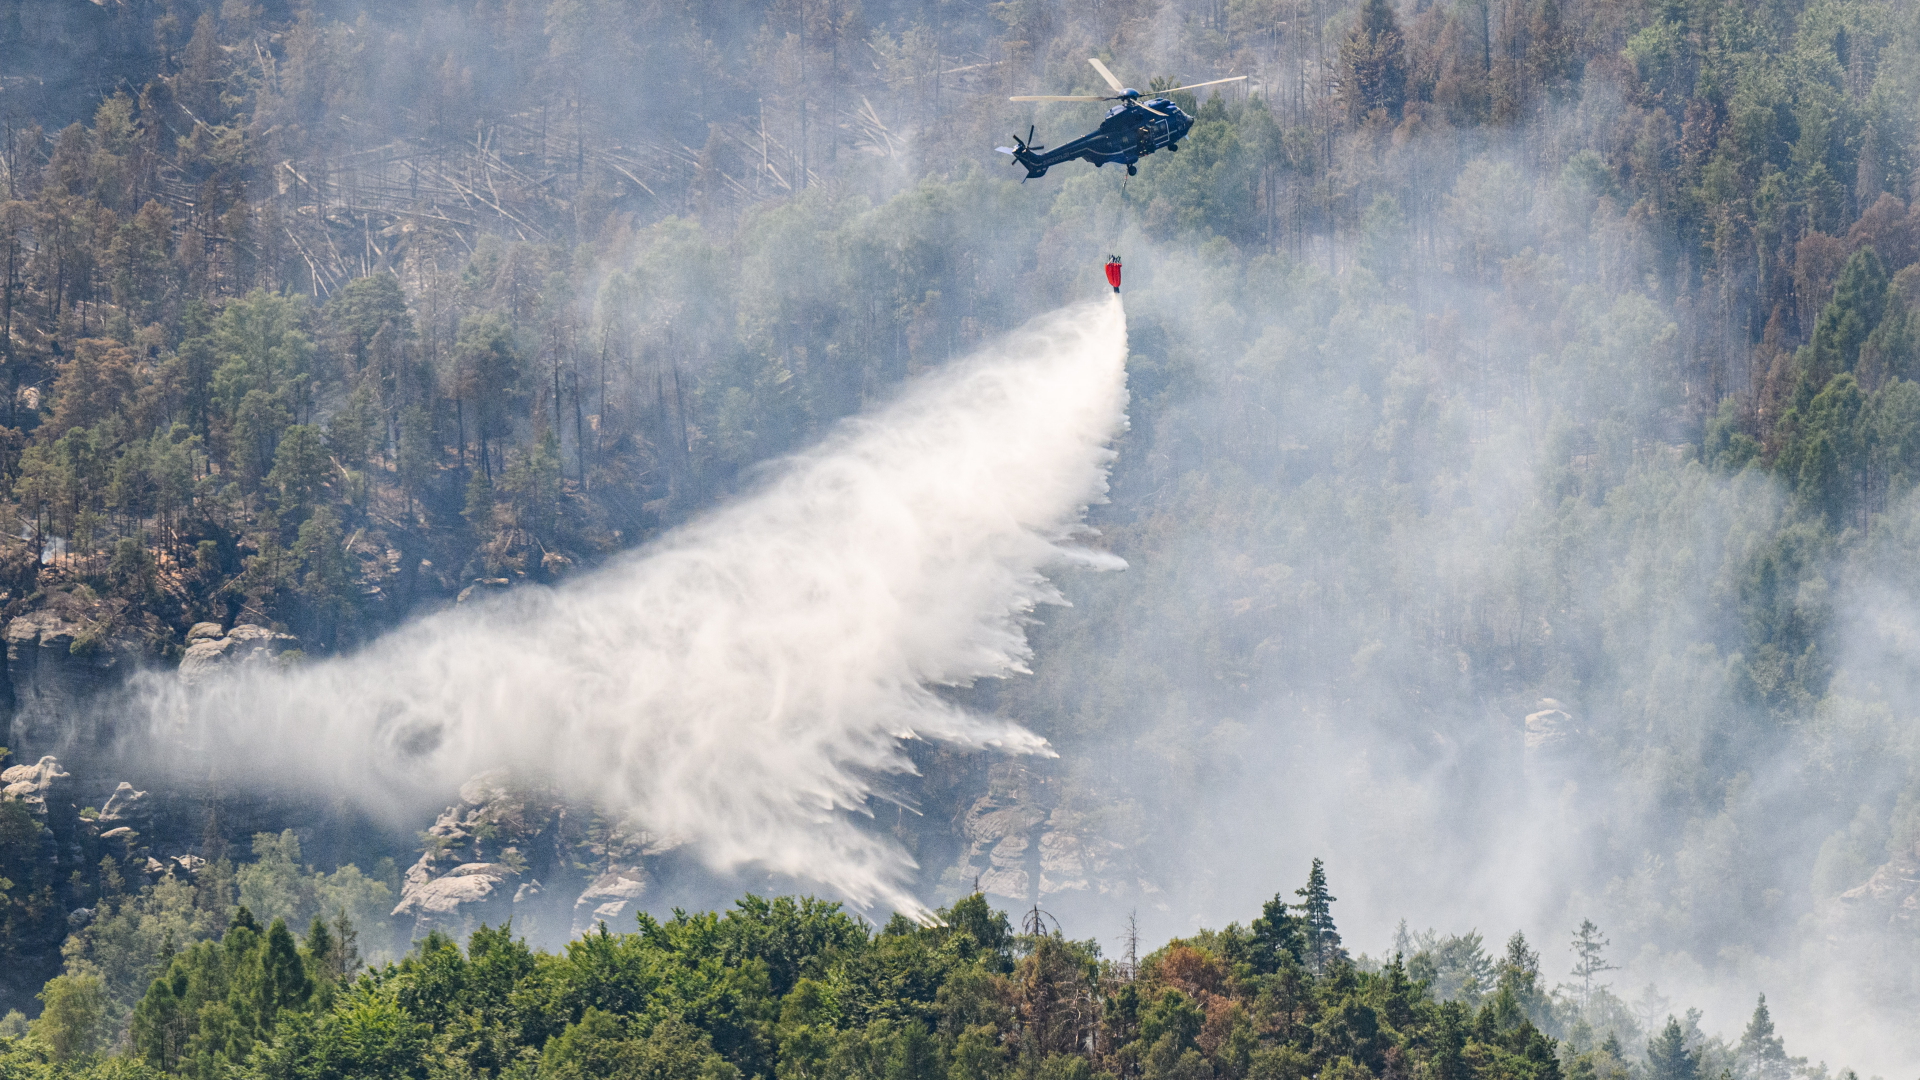 Ein Hubschrauber der Bundespolizei fliegt mit einem Löschwasser-Außenlastbehälter über einem Waldbrand im Nationalpark Sächsische Schweiz. | dpa